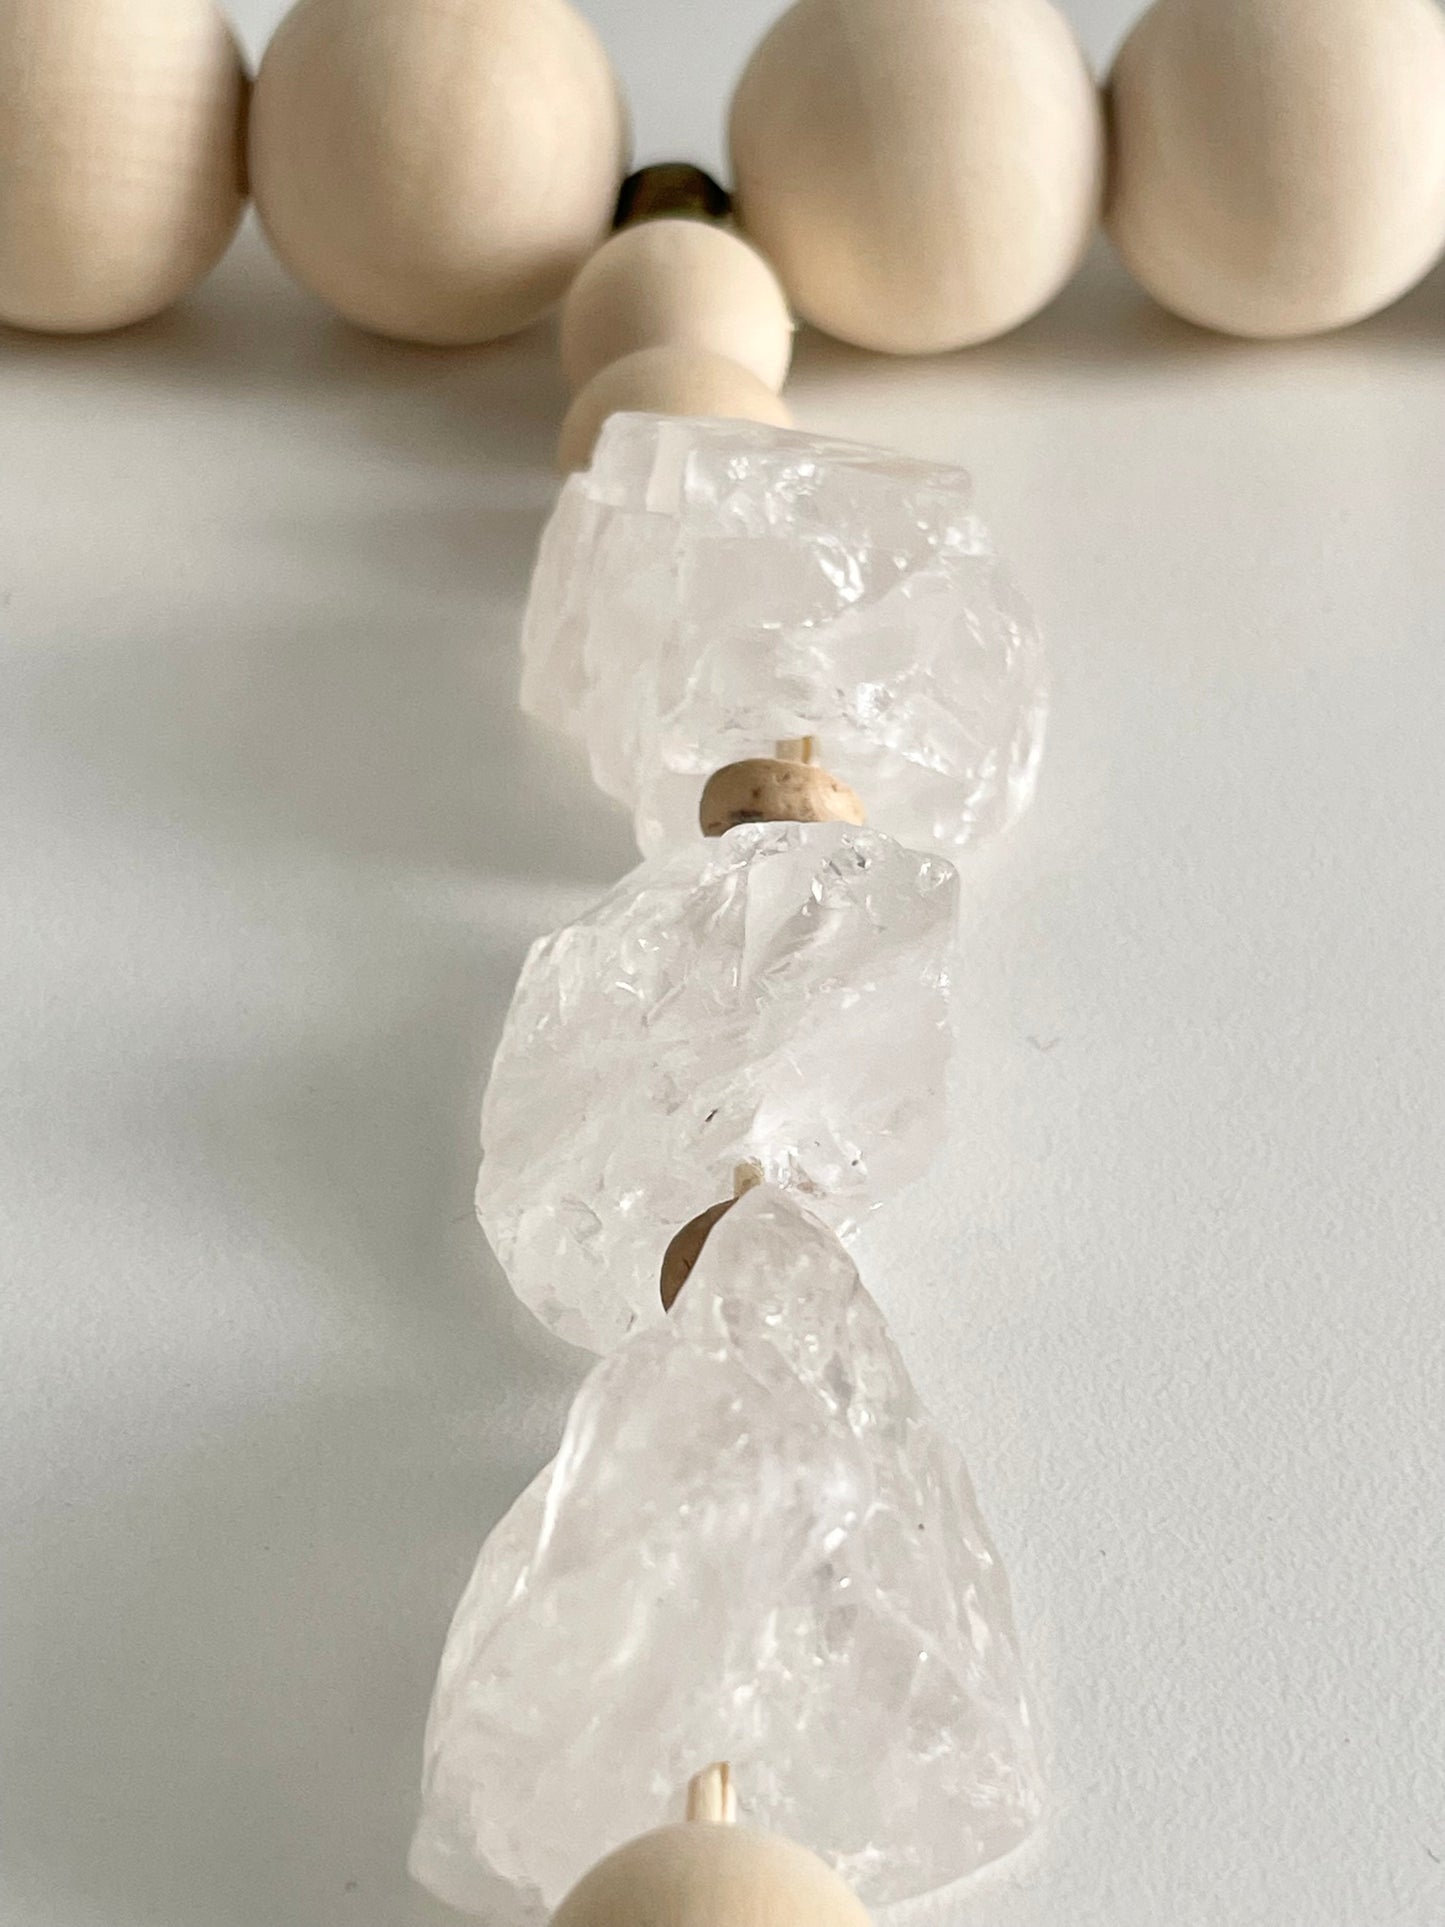 Meditation Beads - Large